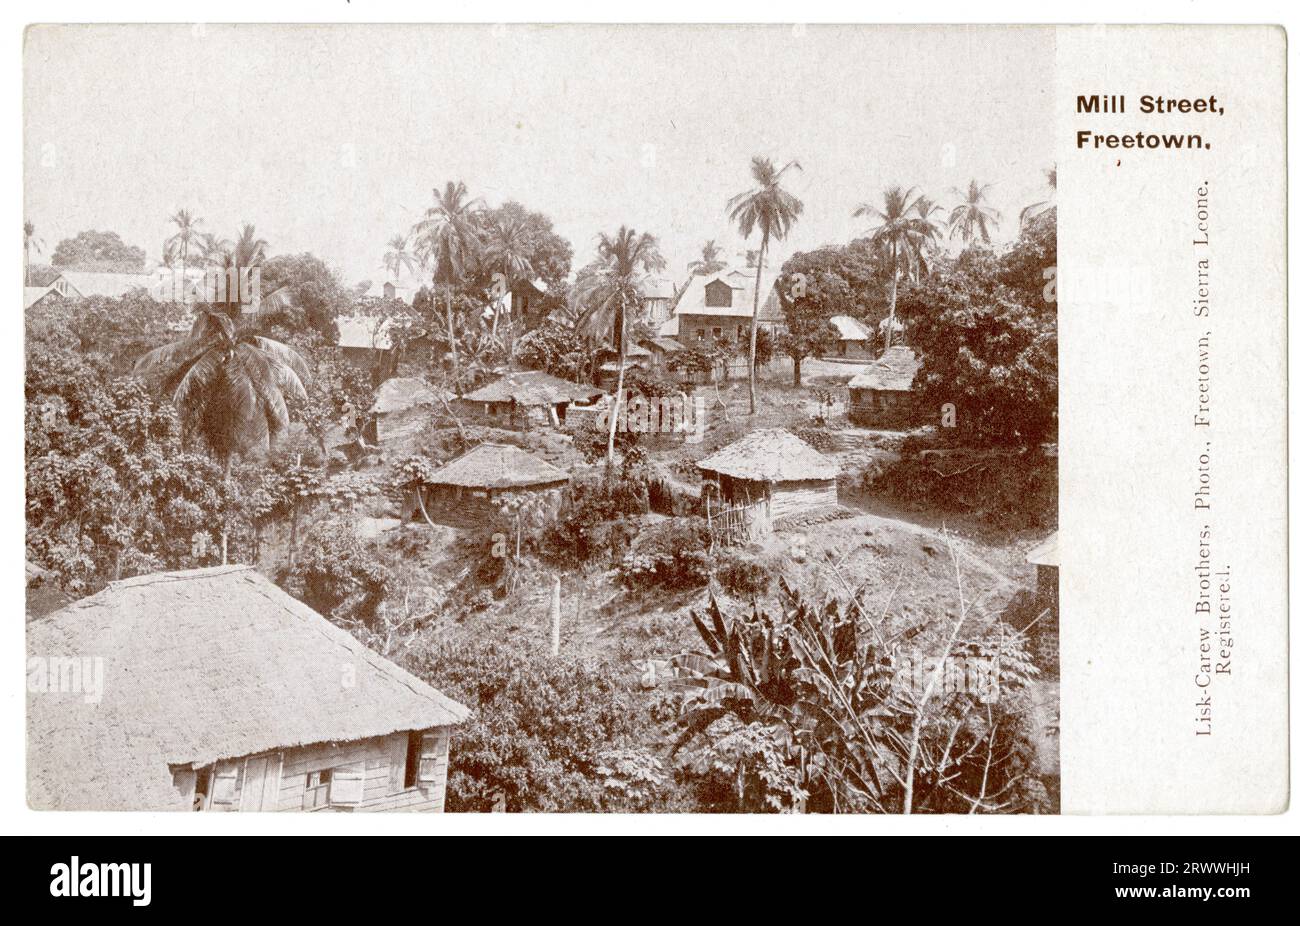 Vue de carte postale de Mill Street à Freetown, montrant de petites maisons parsemées de grands arbres et de plus grands bâtiments de style colonial en arrière-plan. Légende imprimée : Mill Street, Freetown. Banque D'Images